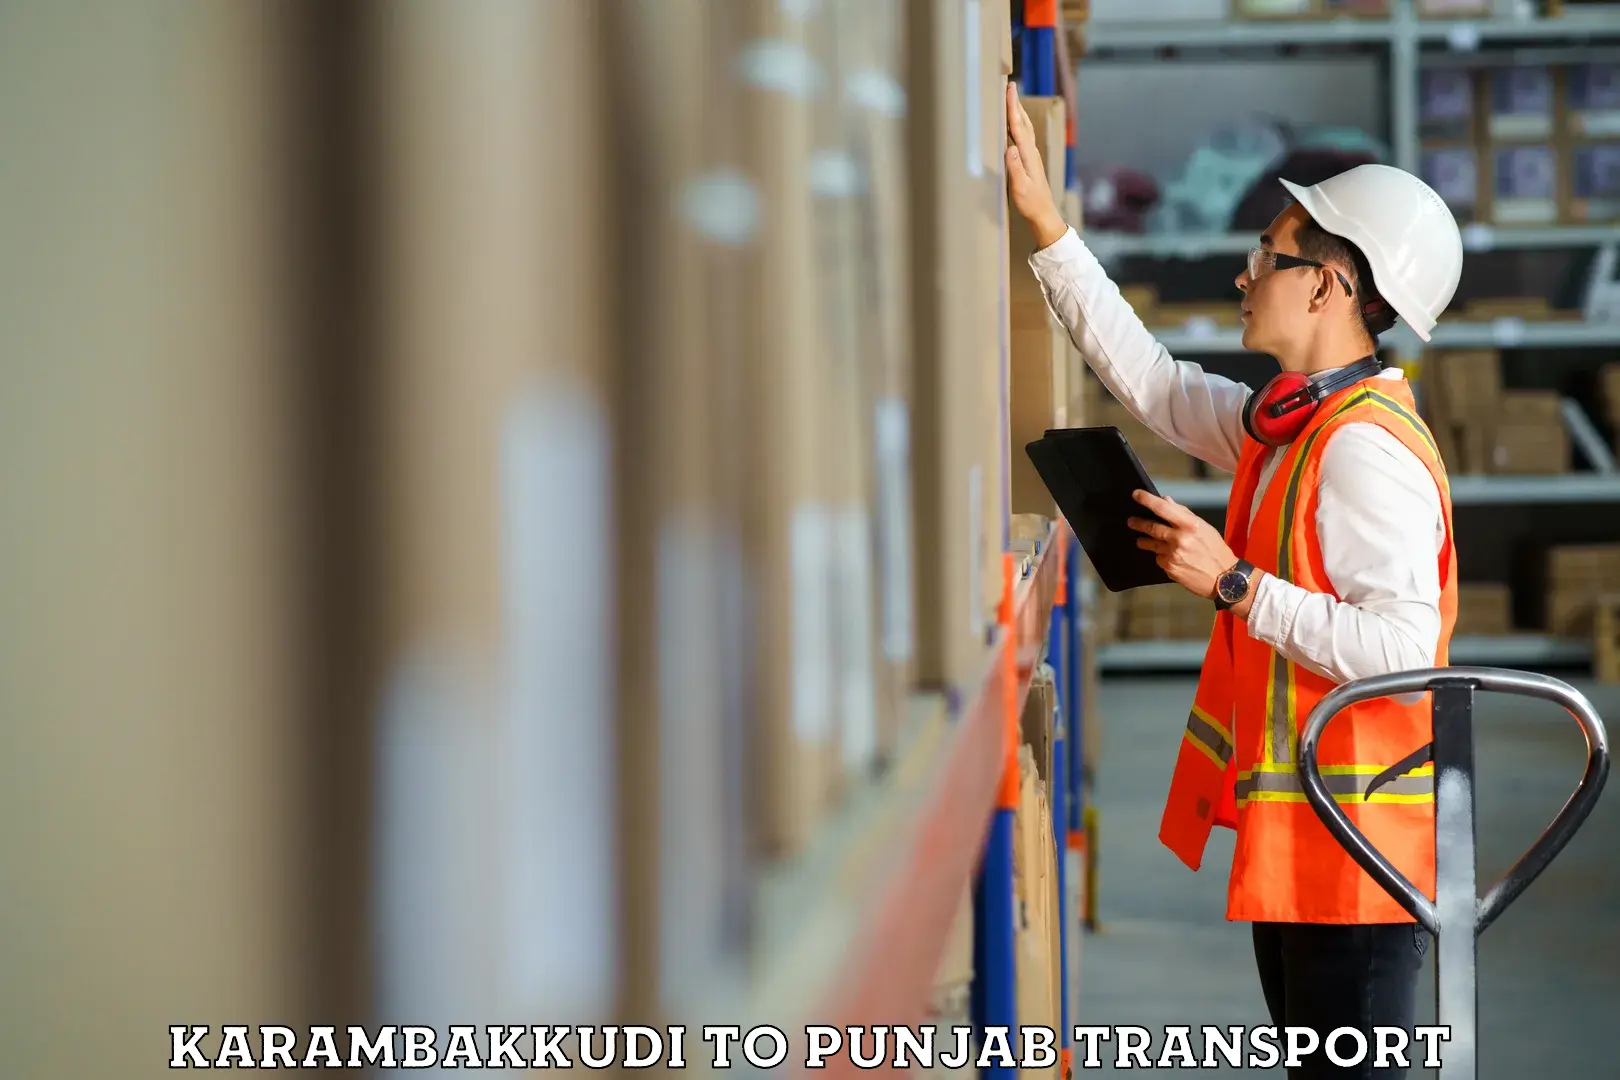 Luggage transport services Karambakkudi to Punjab